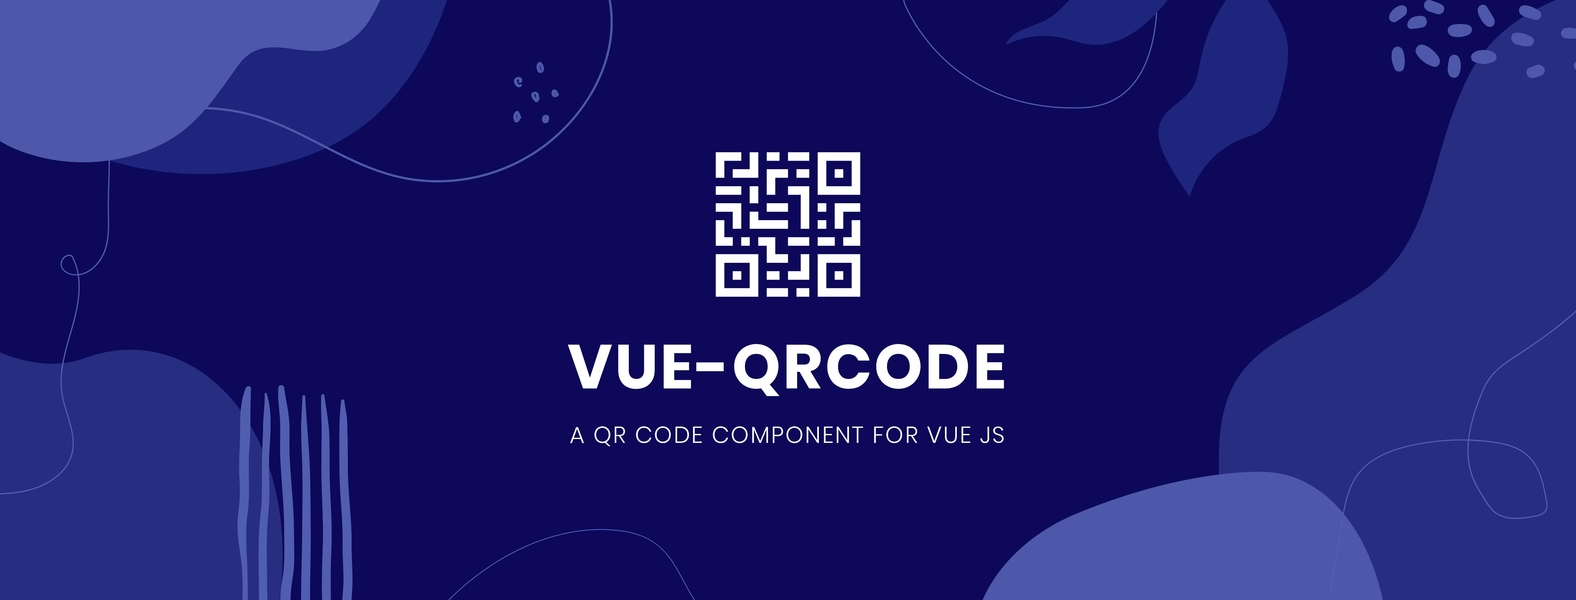 Vue-qrcode  - A QR Code Component for Vue js 